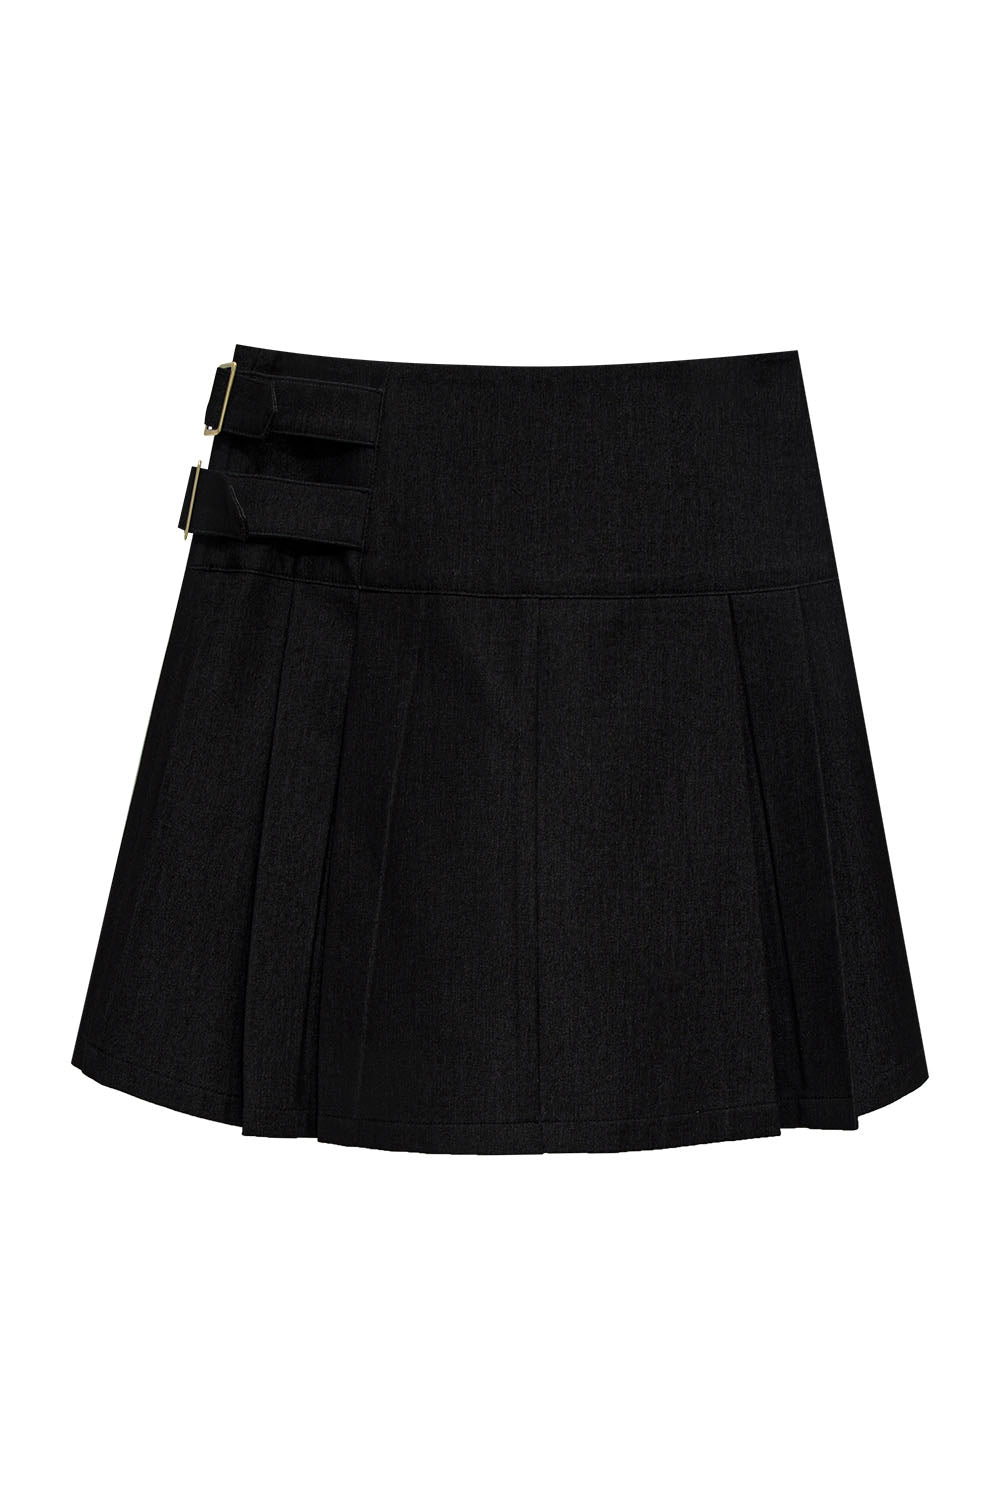 Women's High-Waisted A-Line Mini Skirt with Belt Detail